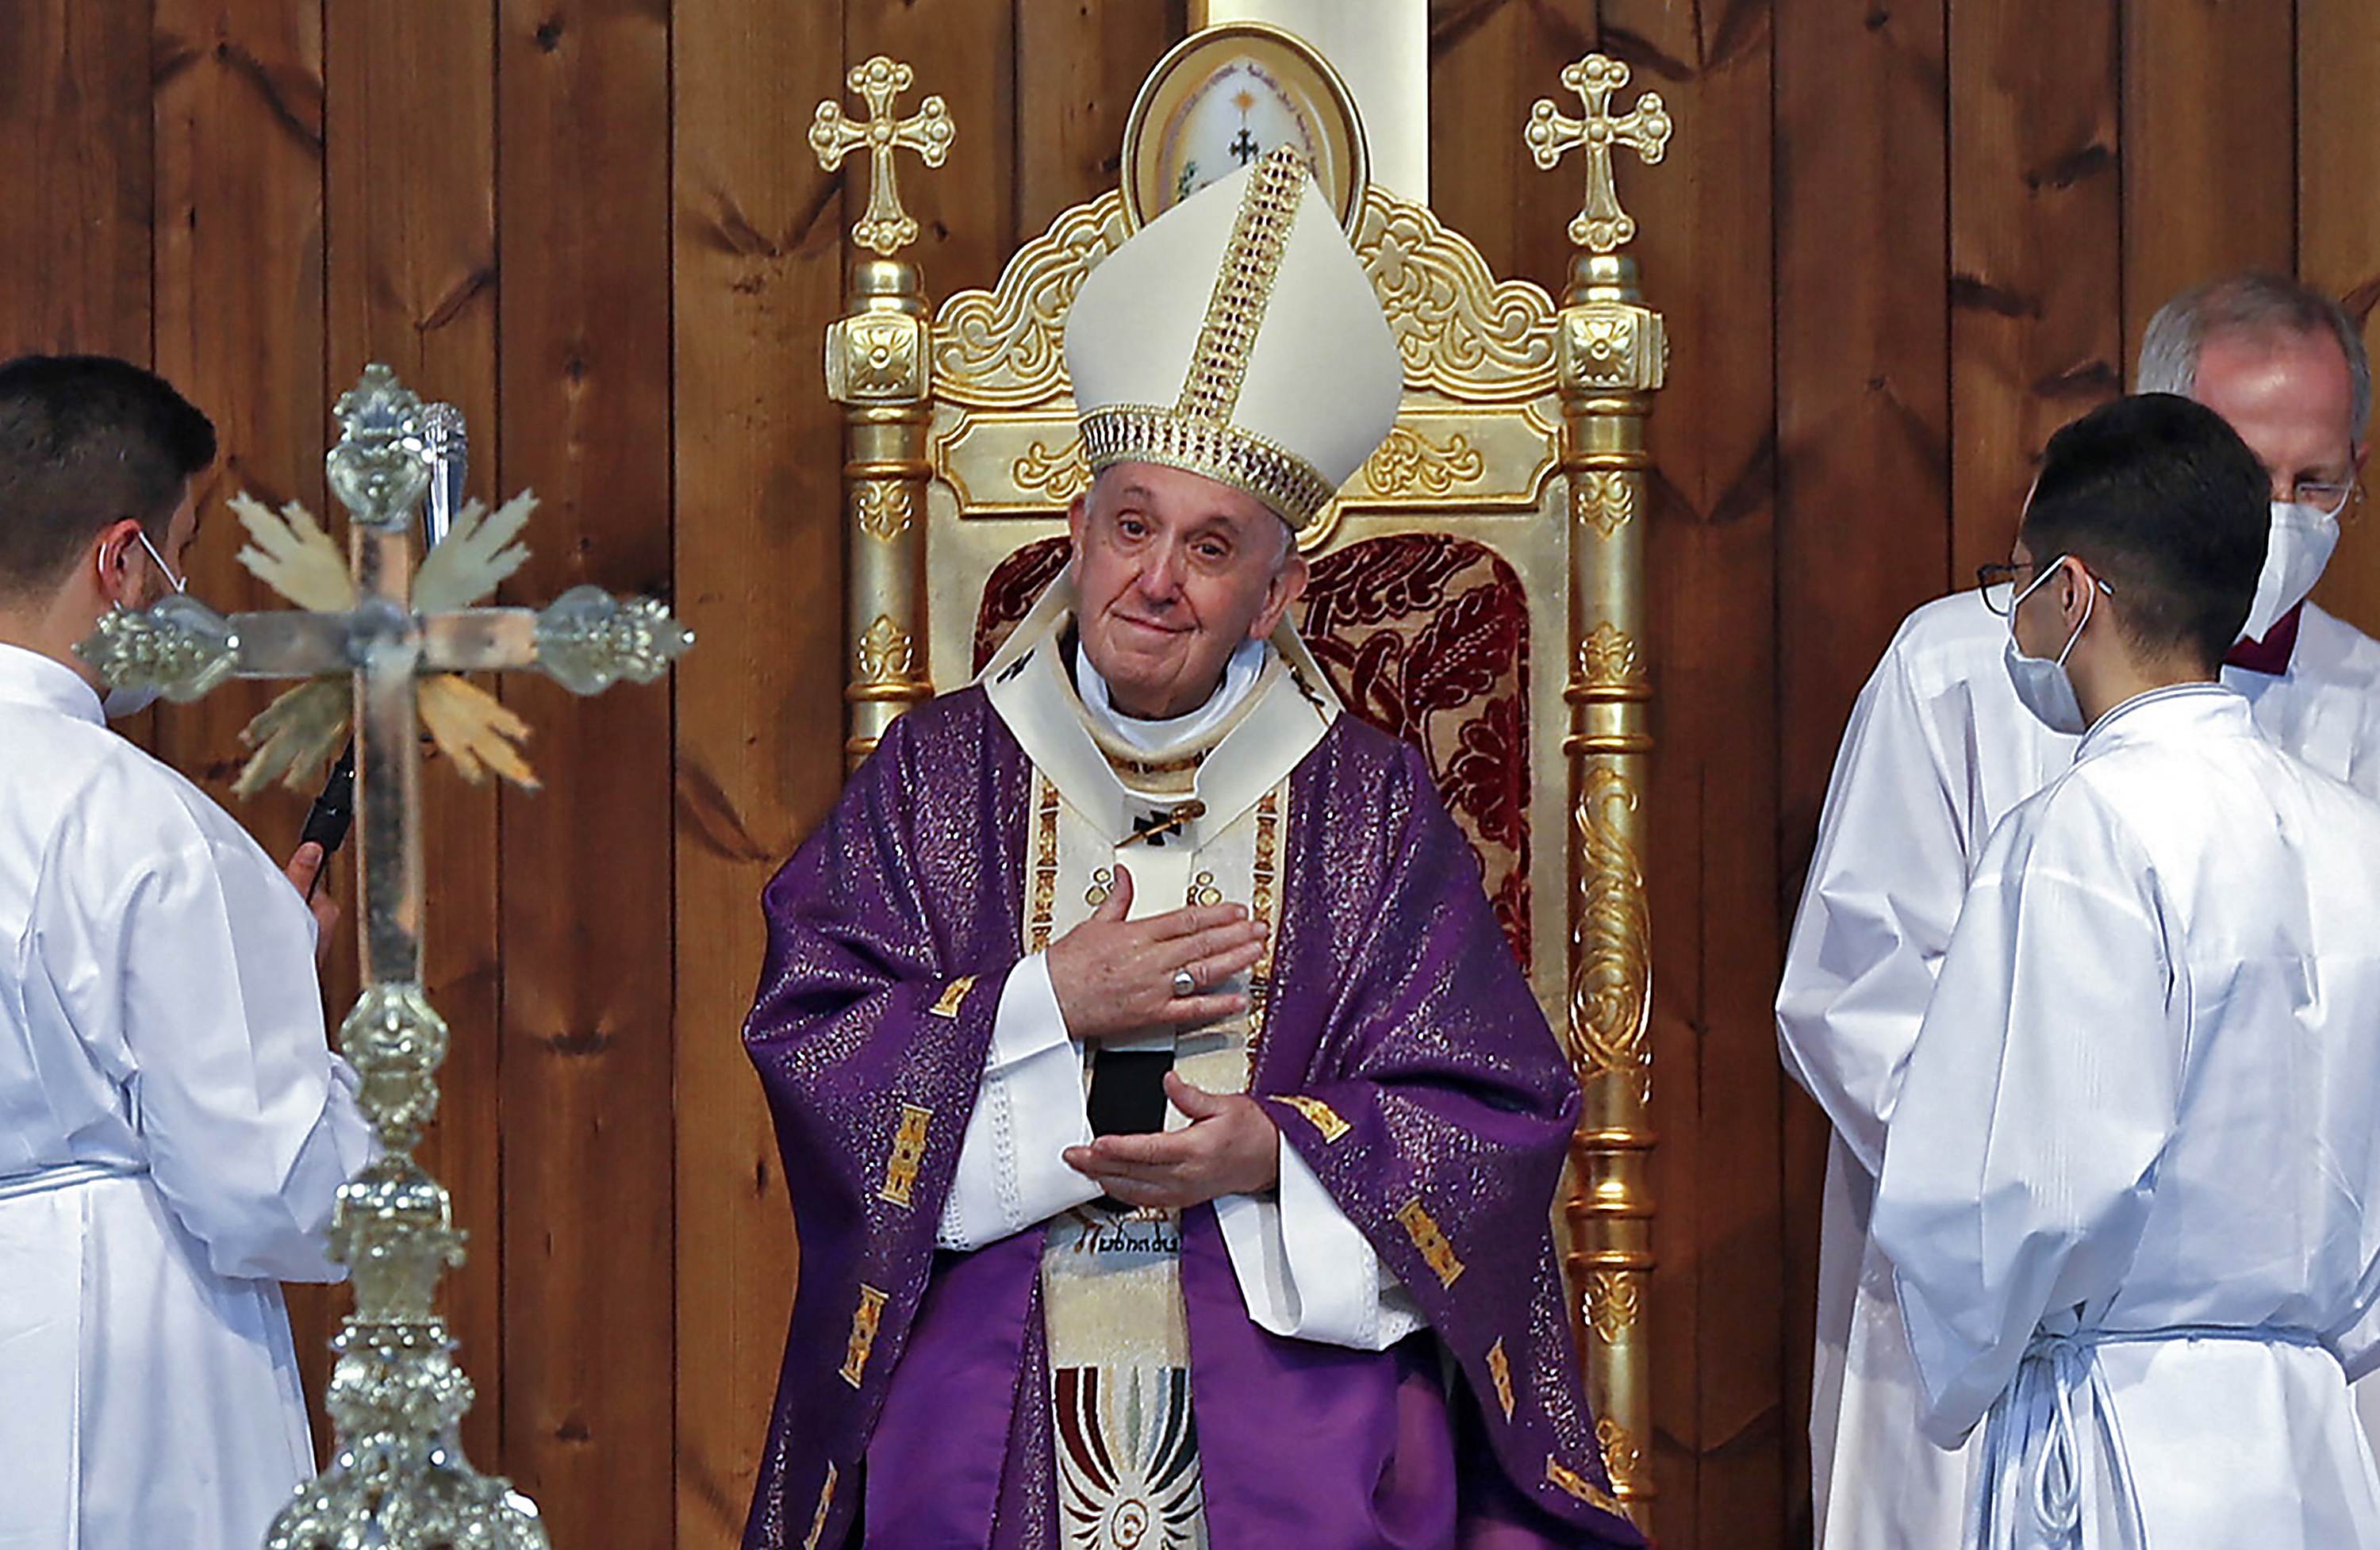 A Vatikán deklarálta, hogy nem áld meg meleg párokat